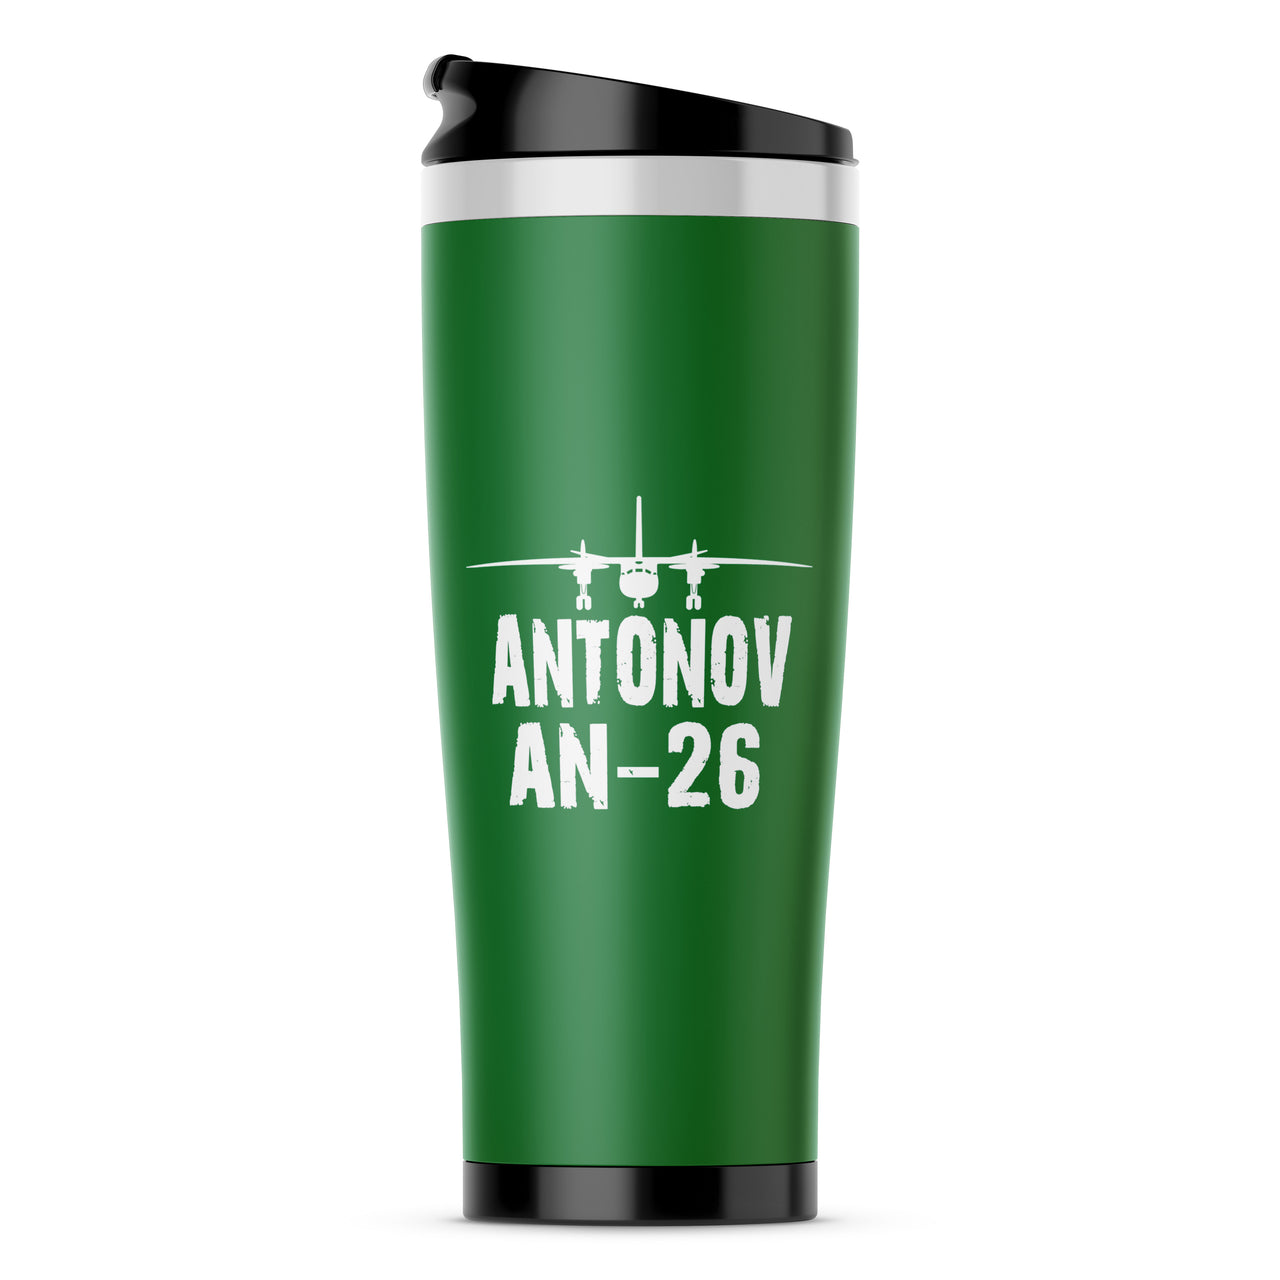 Antonov AN-26 & Plane Designed Travel Mugs